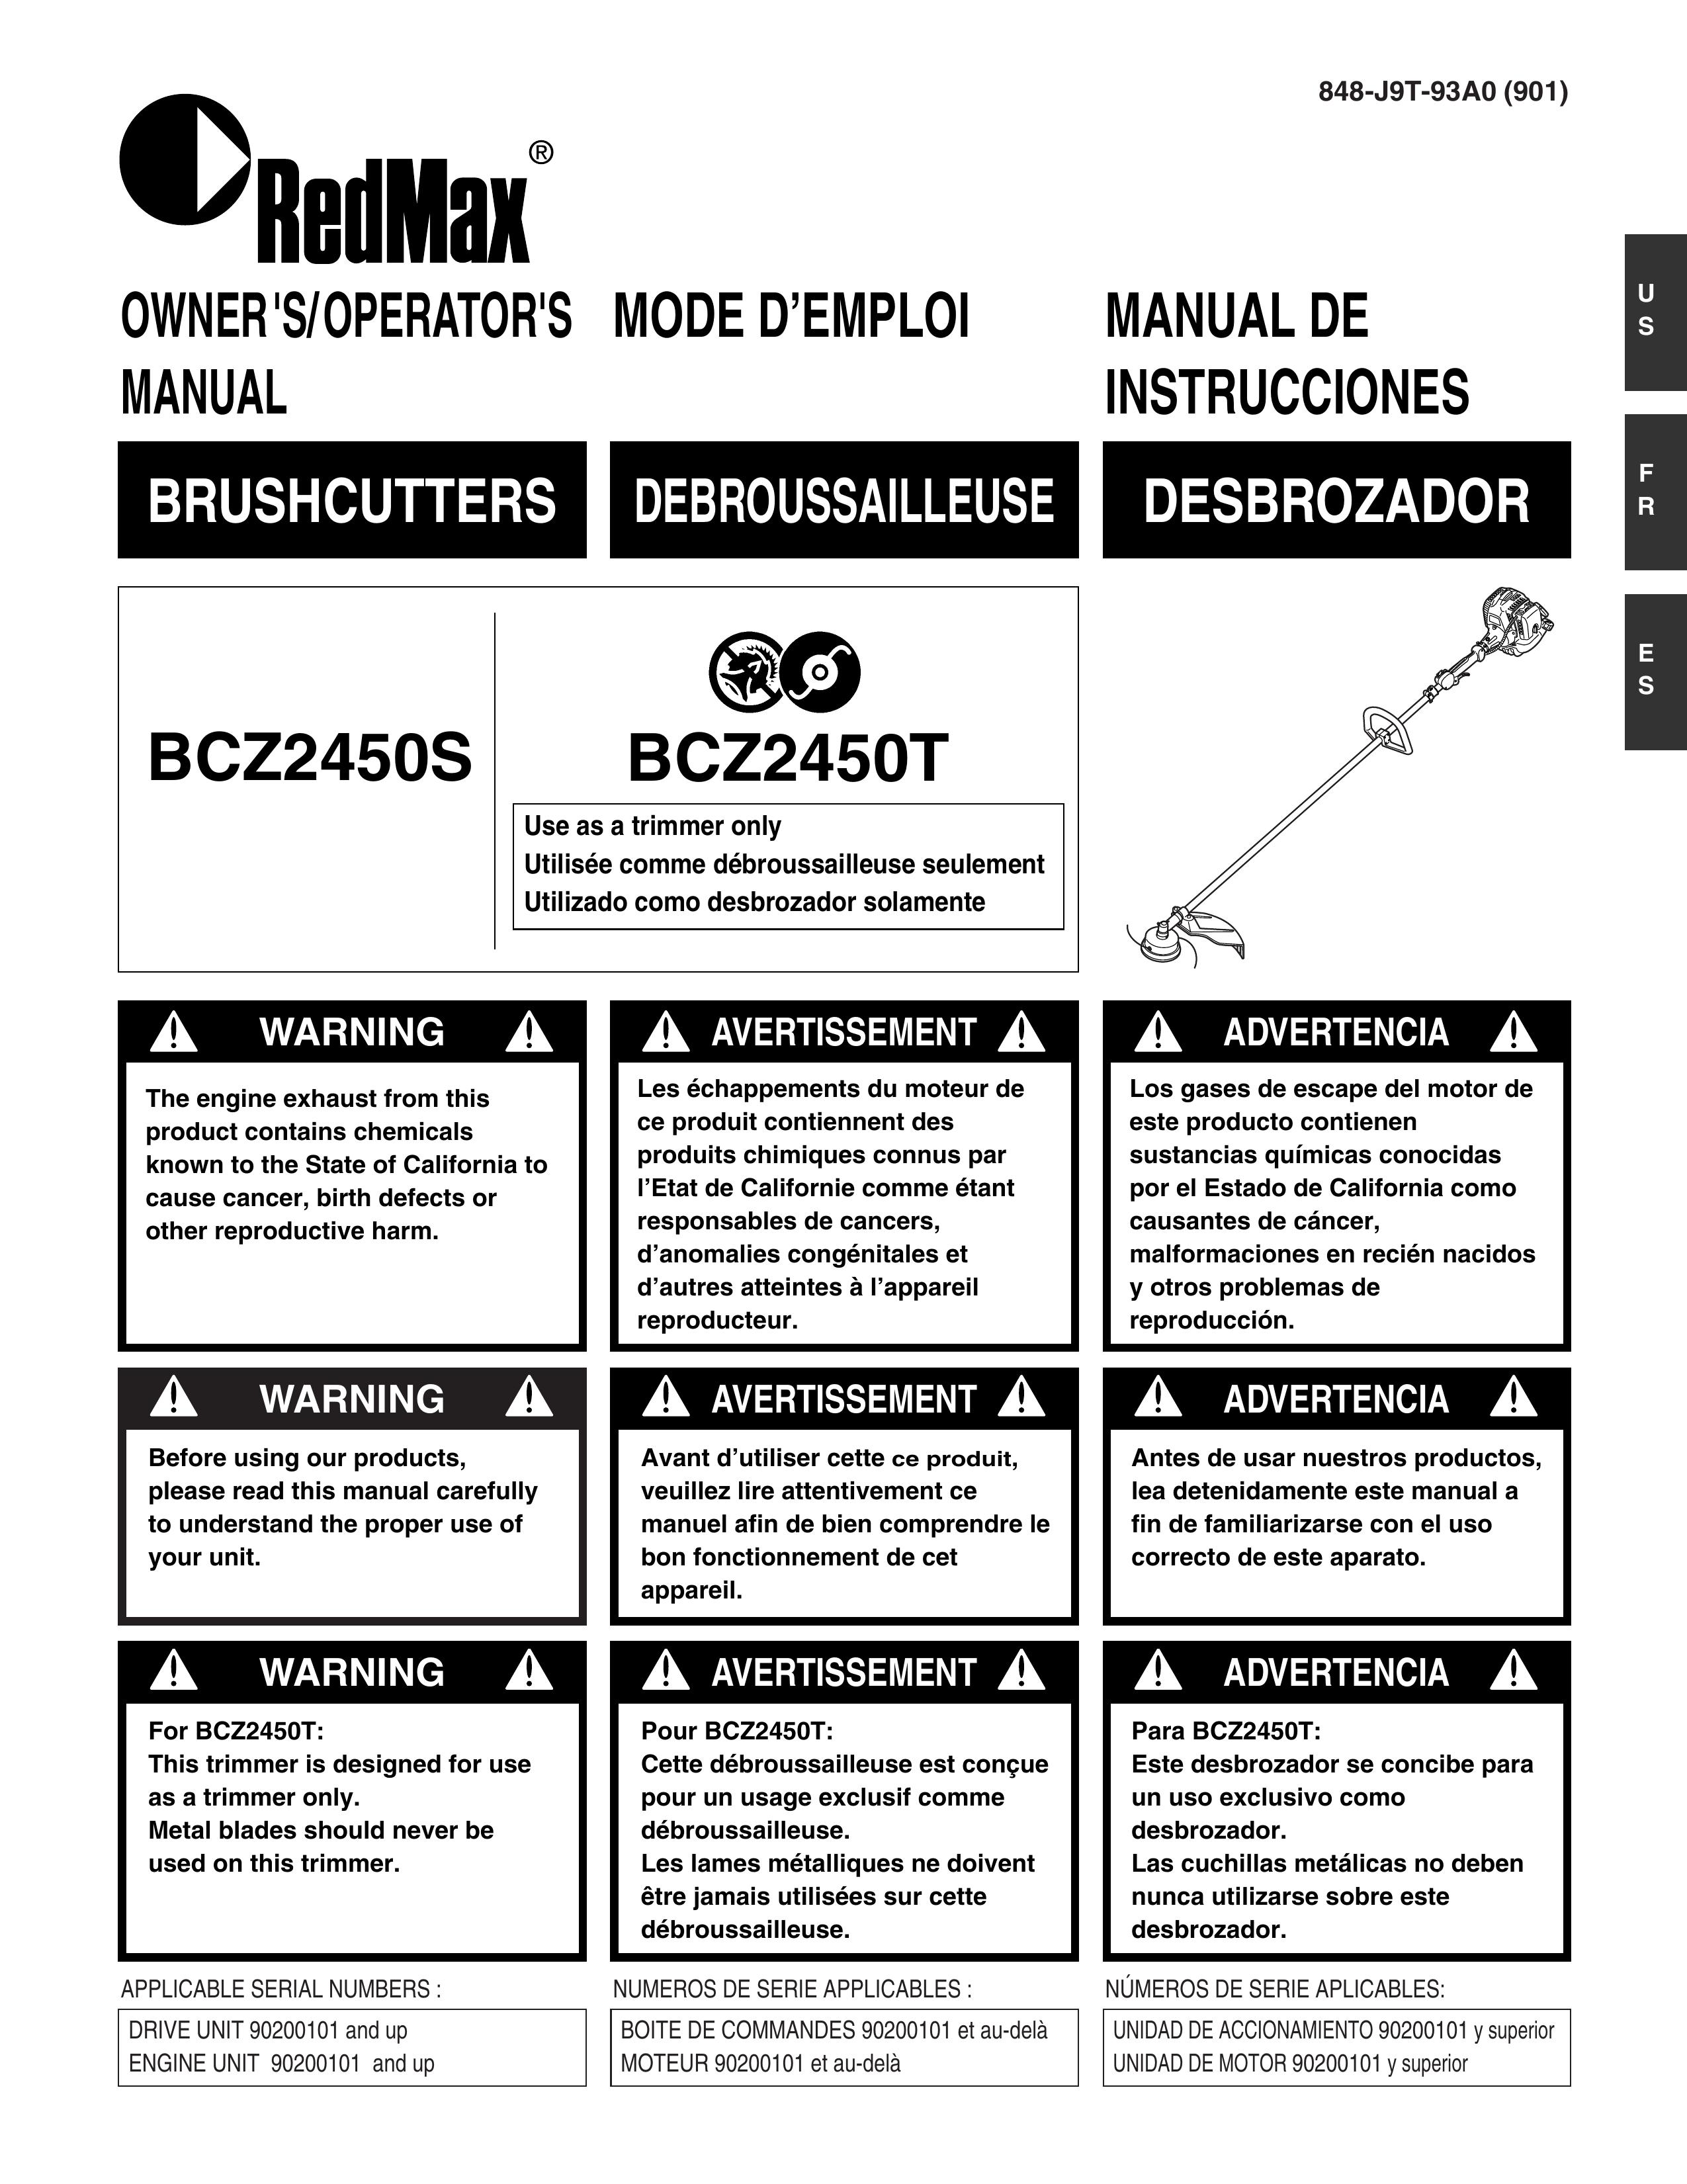 RedMax BCZ2450S Brush Cutter User Manual